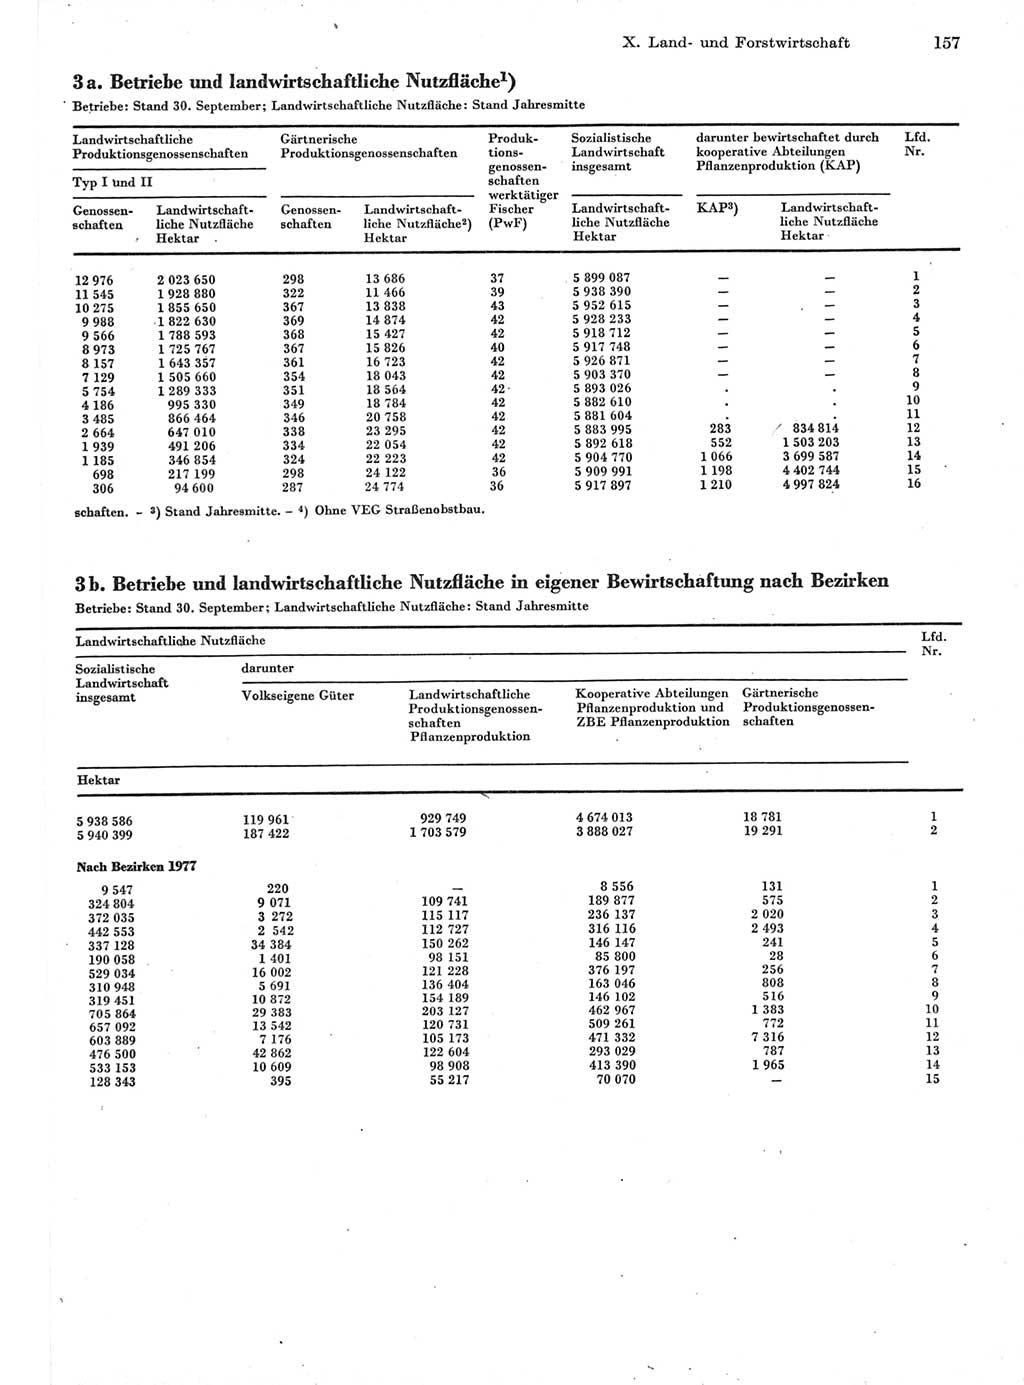 Statistisches Jahrbuch der Deutschen Demokratischen Republik (DDR) 1978, Seite 157 (Stat. Jb. DDR 1978, S. 157)